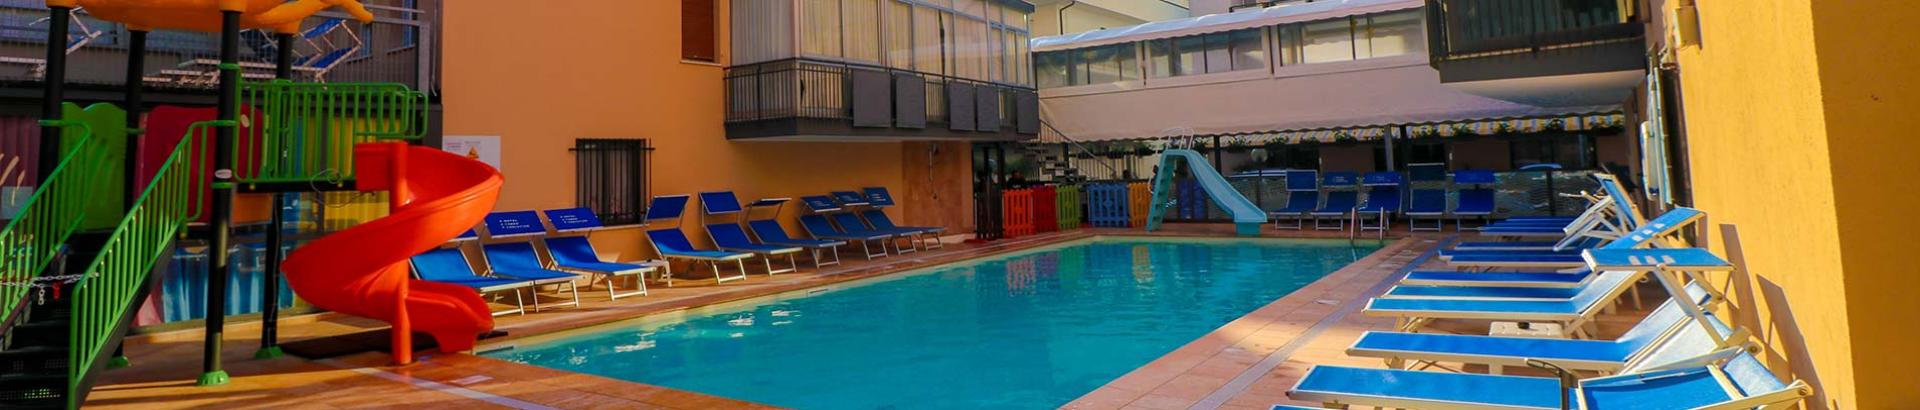 hotelchristianrimini it con-piscina 012